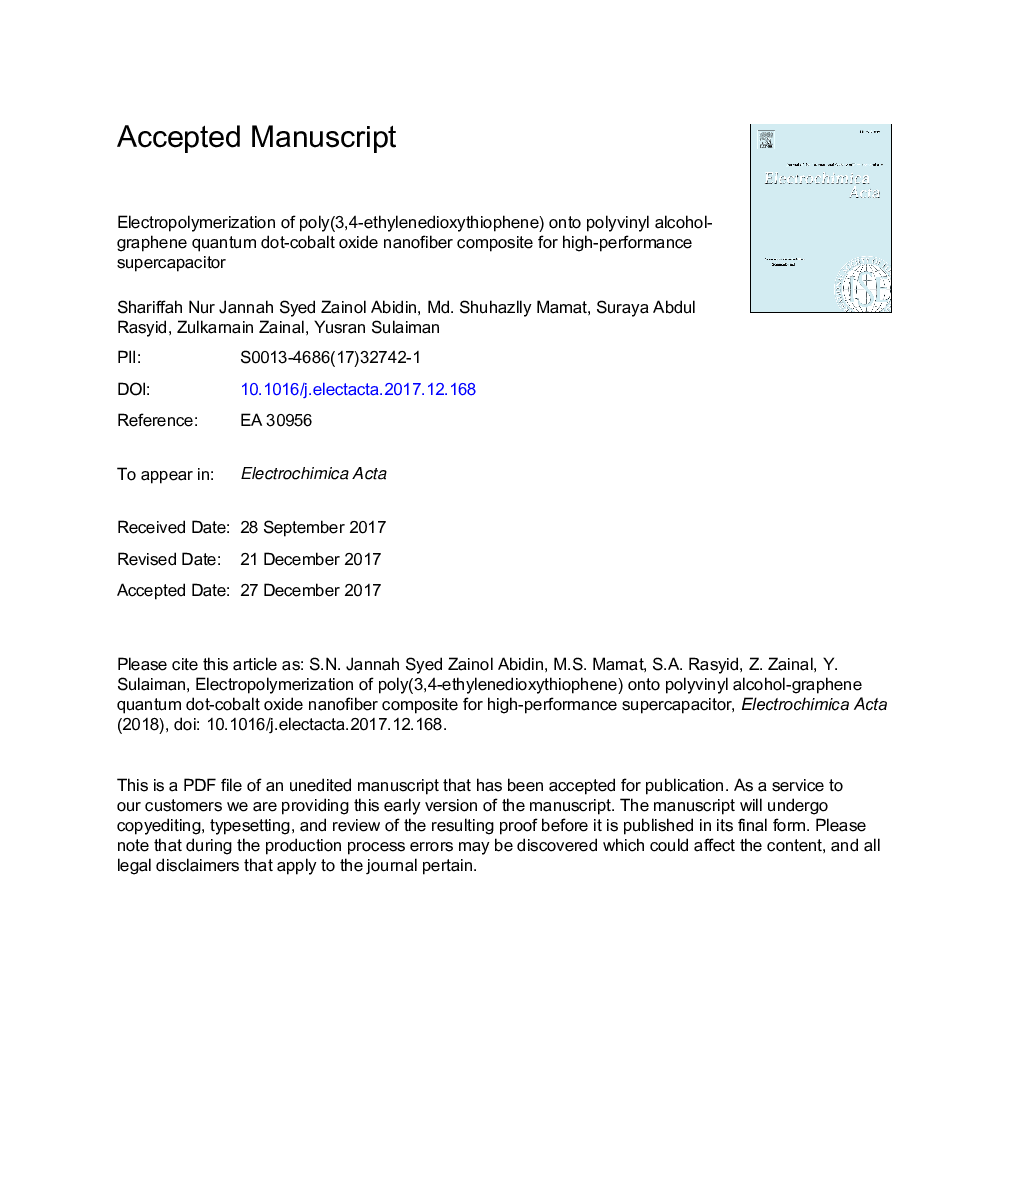 الکترو پلیمر سازی پلی (3،4-اتیلن دی سکته یوفن) روی پلی اتیلن الکل گرافن کامپوزیت کوانتومی نقطه کبالت اکسید کوانتومی برای ابرکاپاسیون با عملکرد بالا 